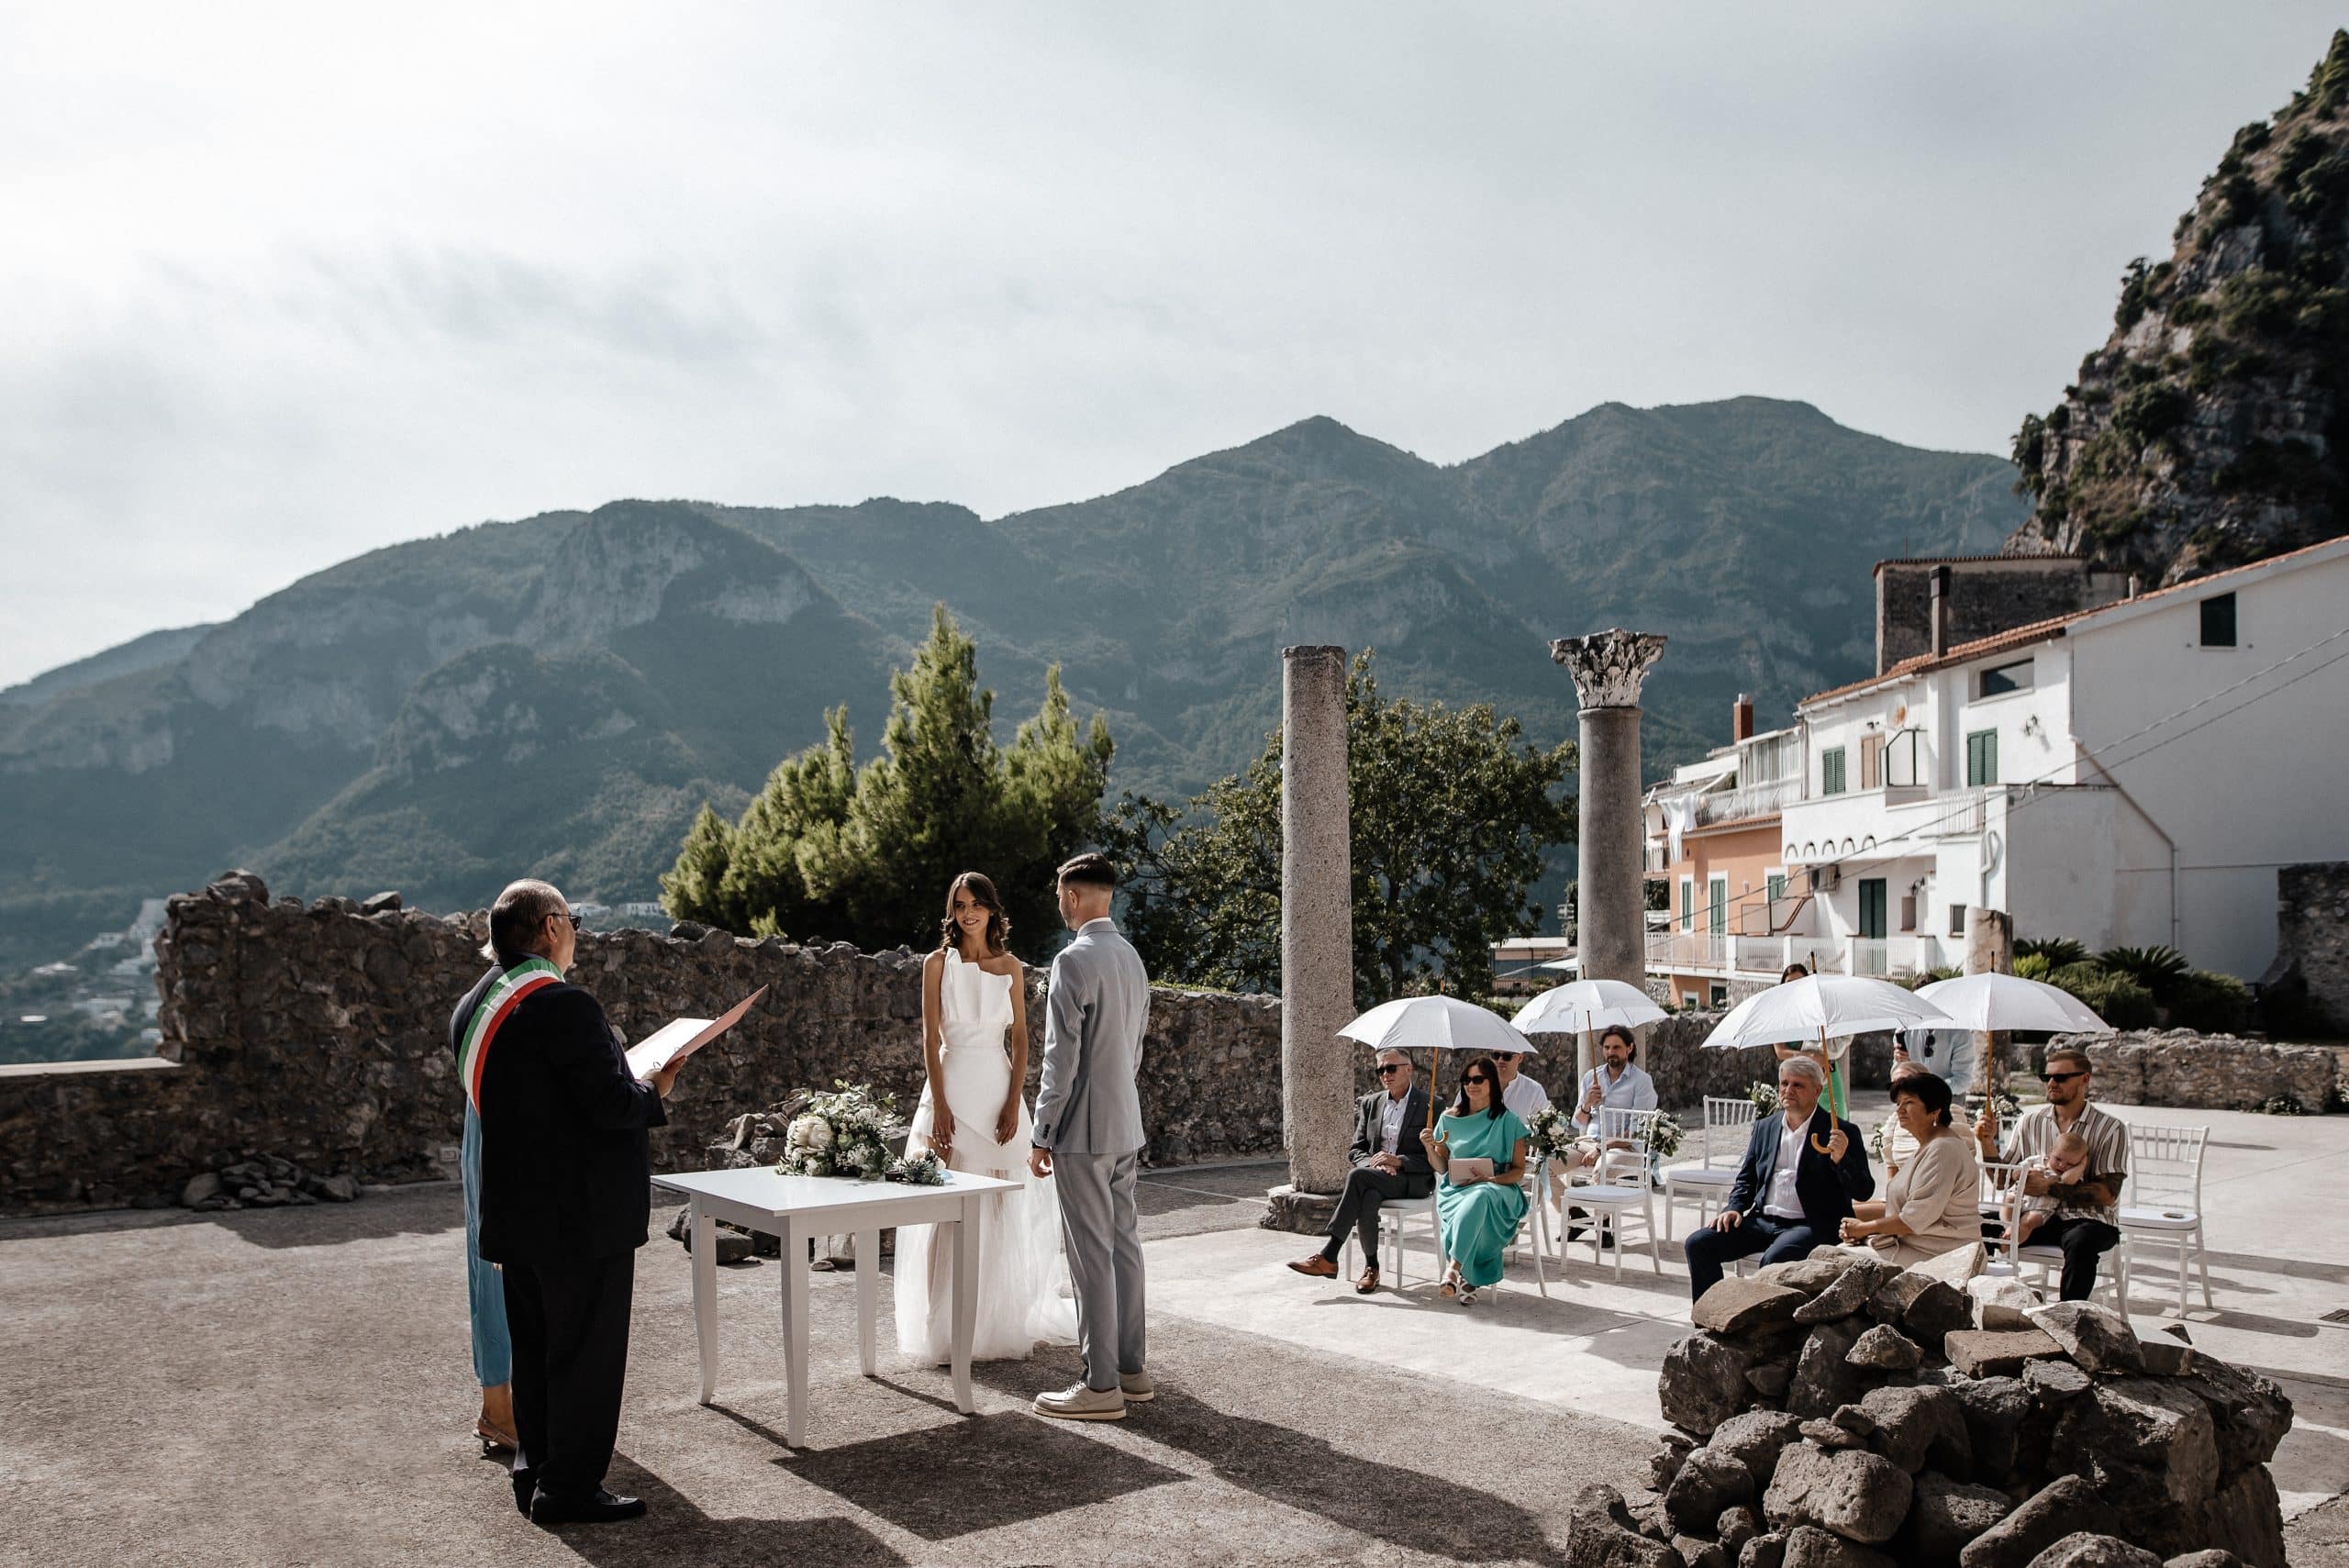 Vilma Wedding & Event Planner _ vestuvių planavimas organizavimas koordinavimas Italijoje _ santuoka užsienyje _ Sant'Eustachio gruvėsiai _ Amalfio pakrantė _ civilinės santuok (4)